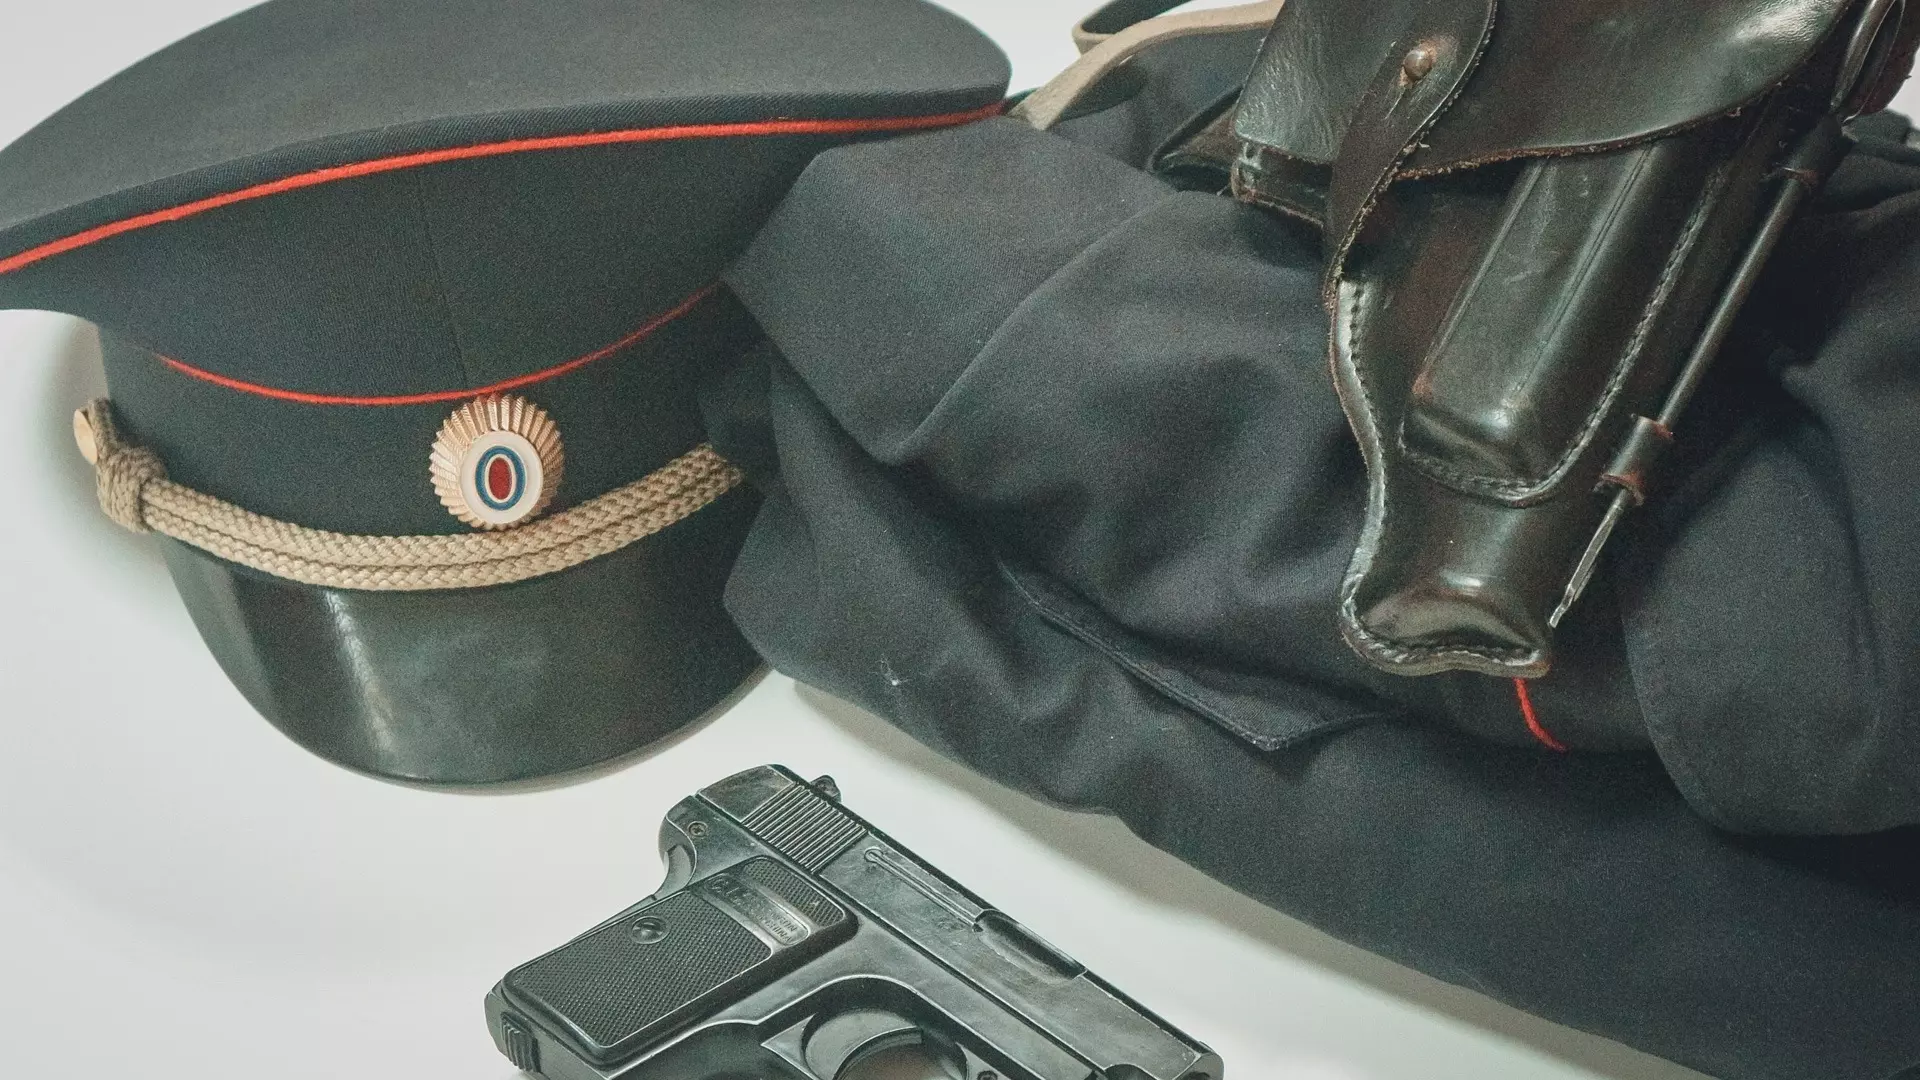 Применить оружие вынудил бесправник полицейских в Магнитогорске